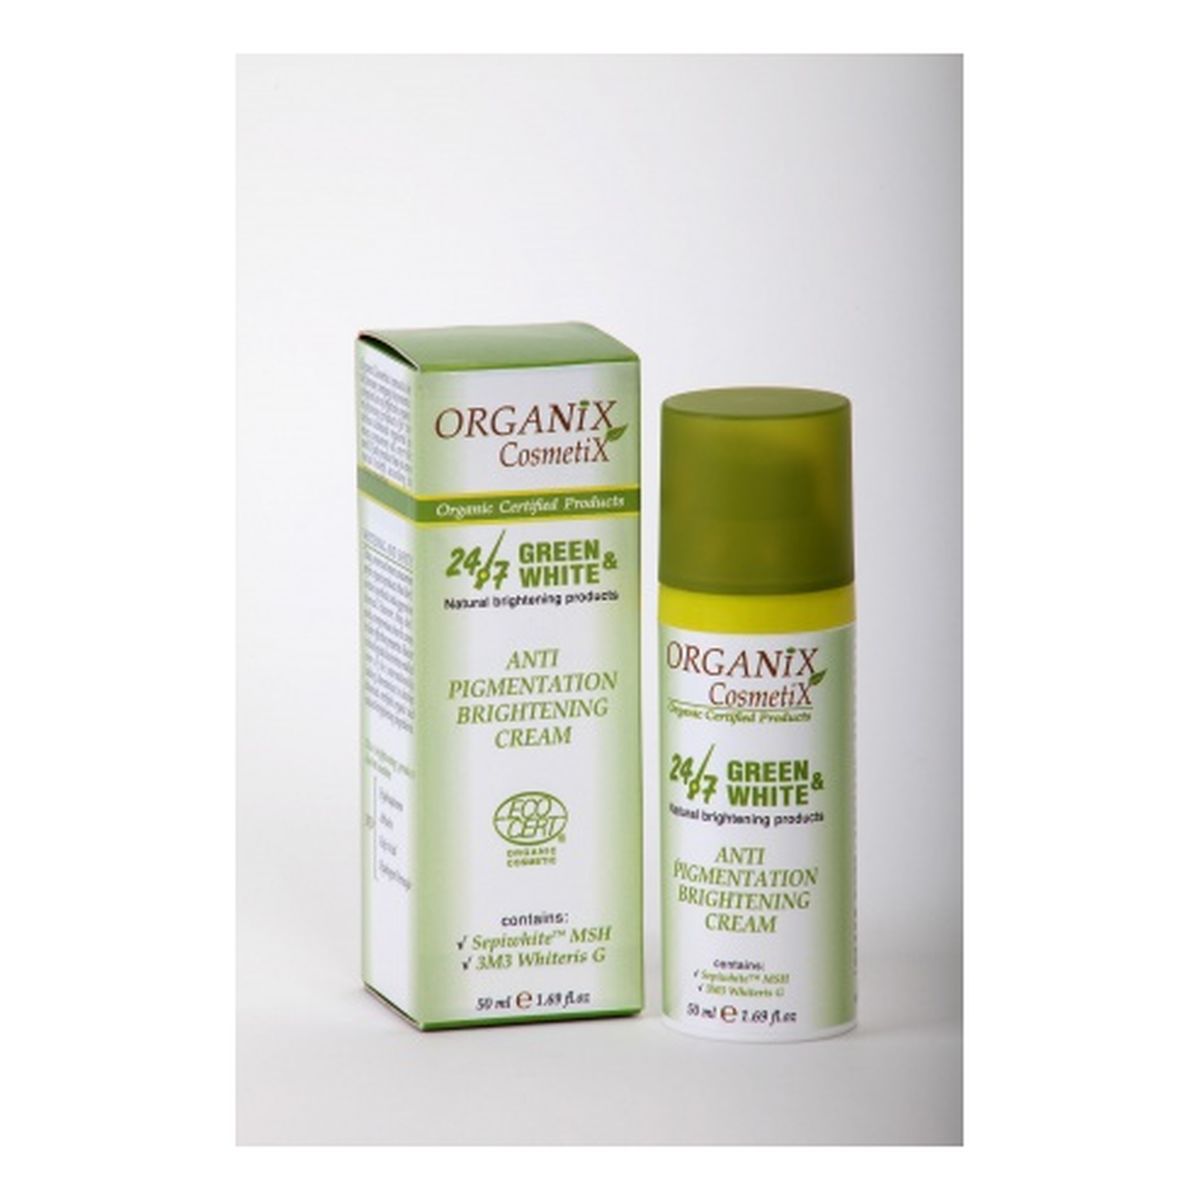 Organix Cosmetix Krem rozjaśniający przebarwienia skórne zmniejszający produkcję melaniny 50ml